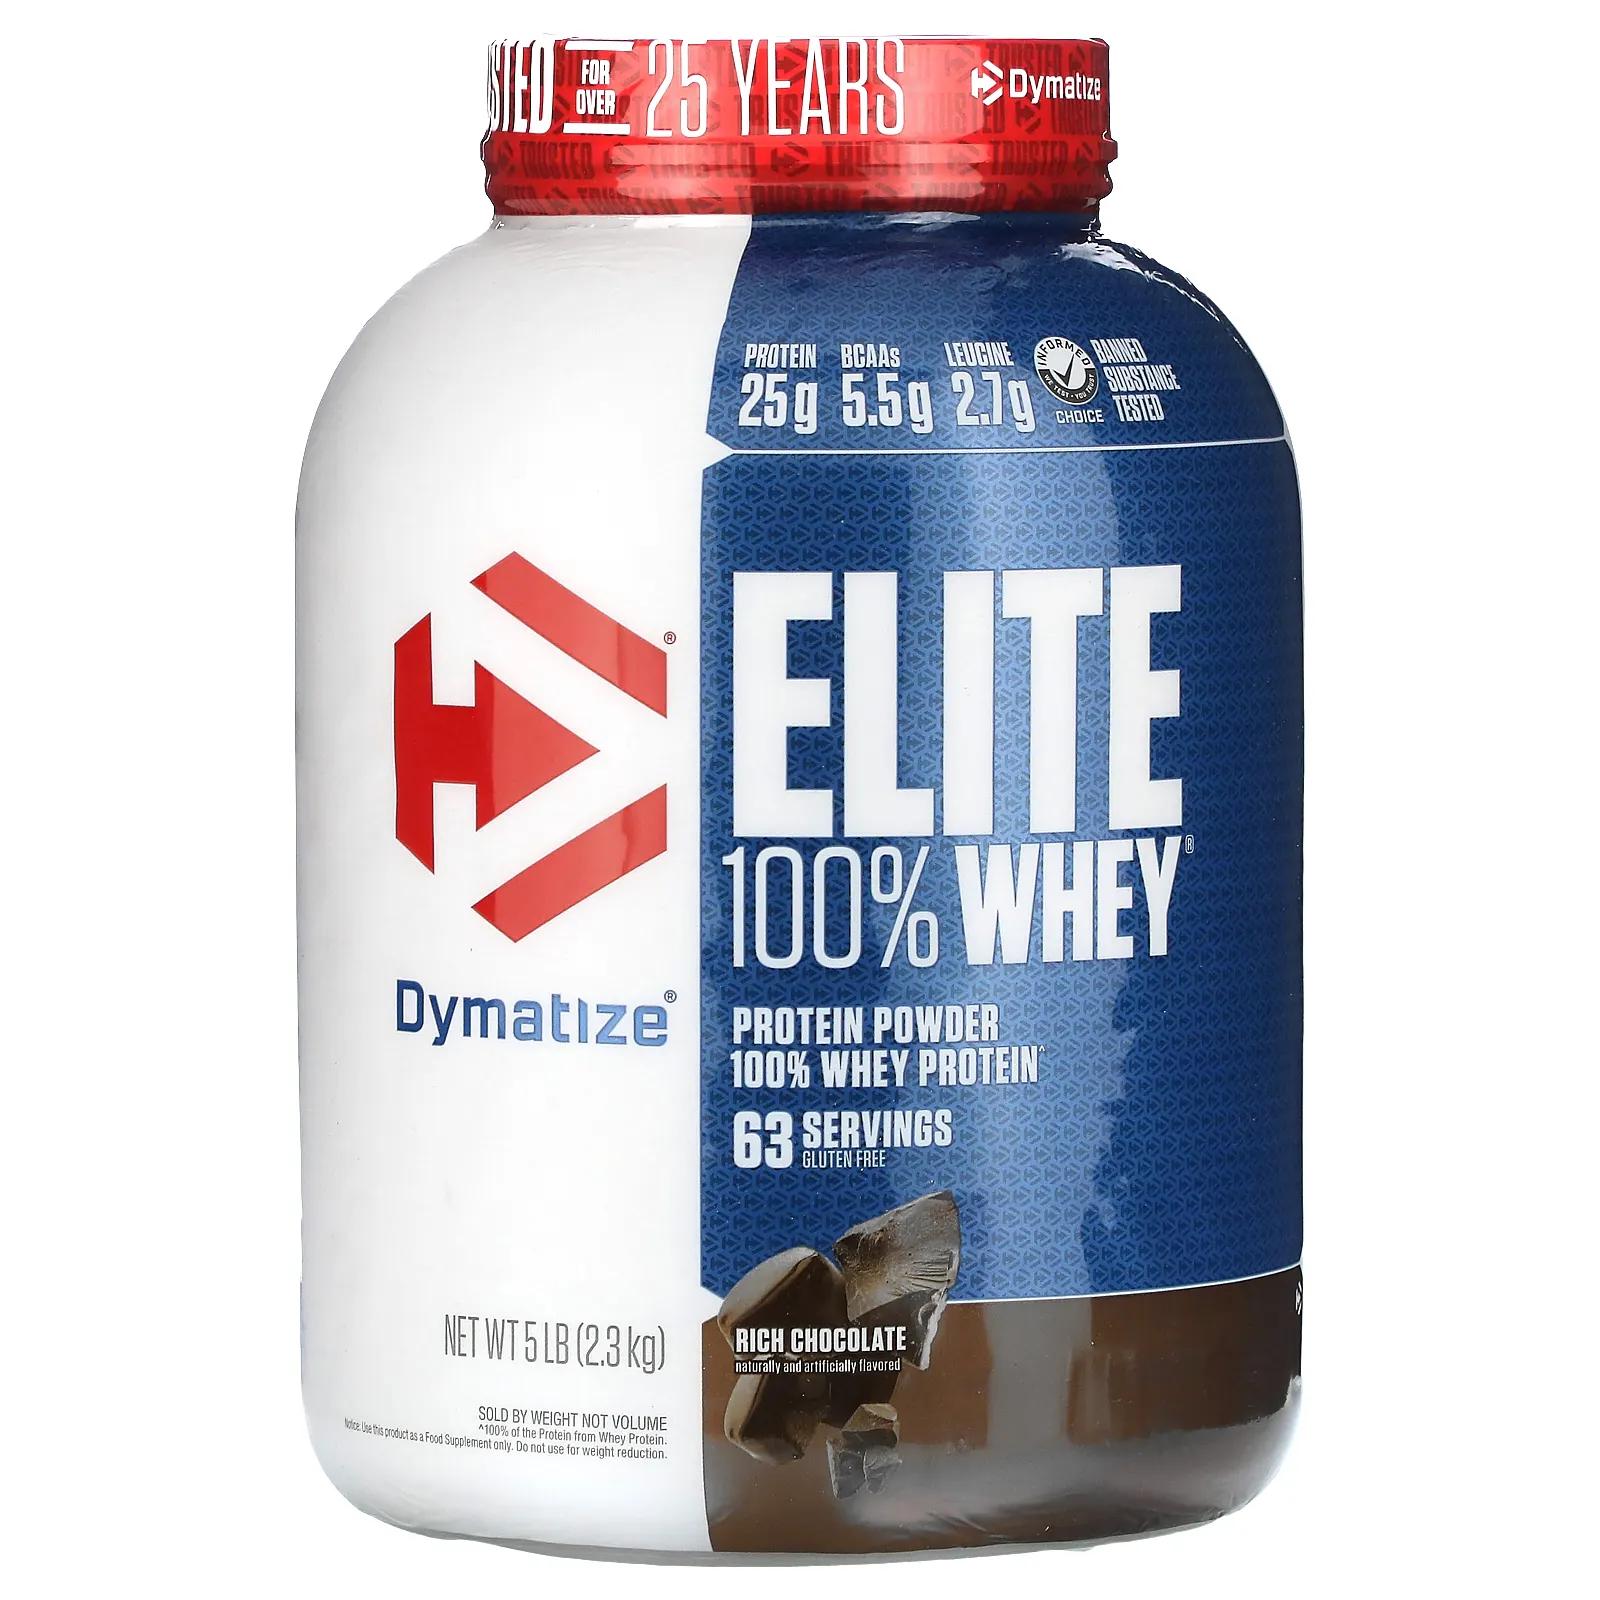 Dymatize Nutrition Elite 100% сывороточный белок насыщенный шоколад 5 ф. (2,3 кг) dymatize nutrition elite 100% сывороточный белок насыщенный шоколад 5 ф 2 3 кг